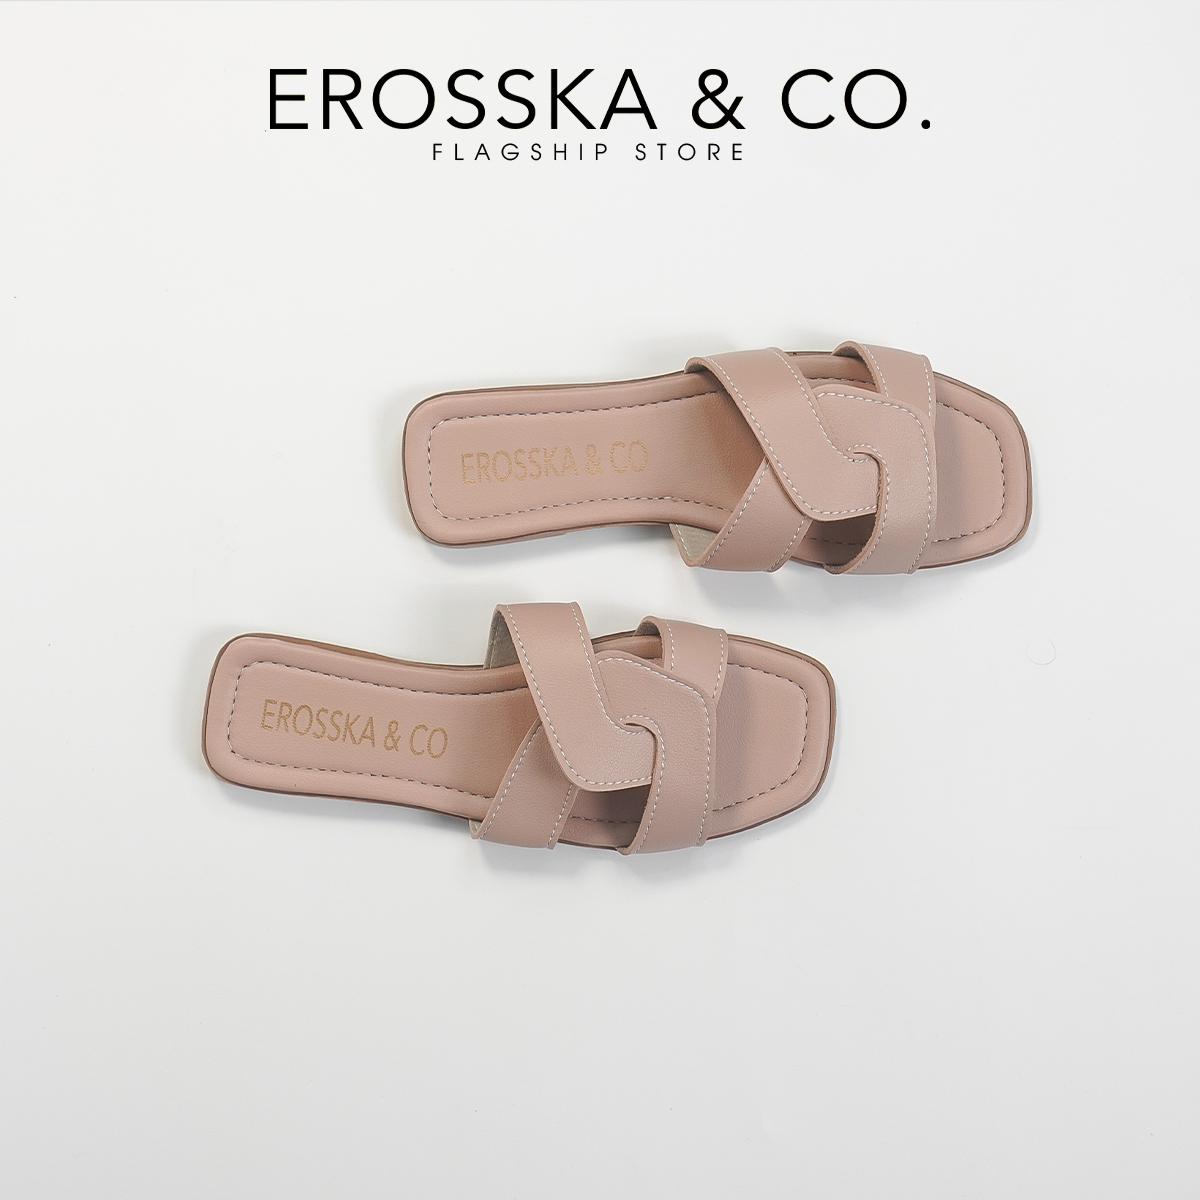 Erosska - Dép đế bệt nữ quai đan kiểu dáng đơn giản - DE064